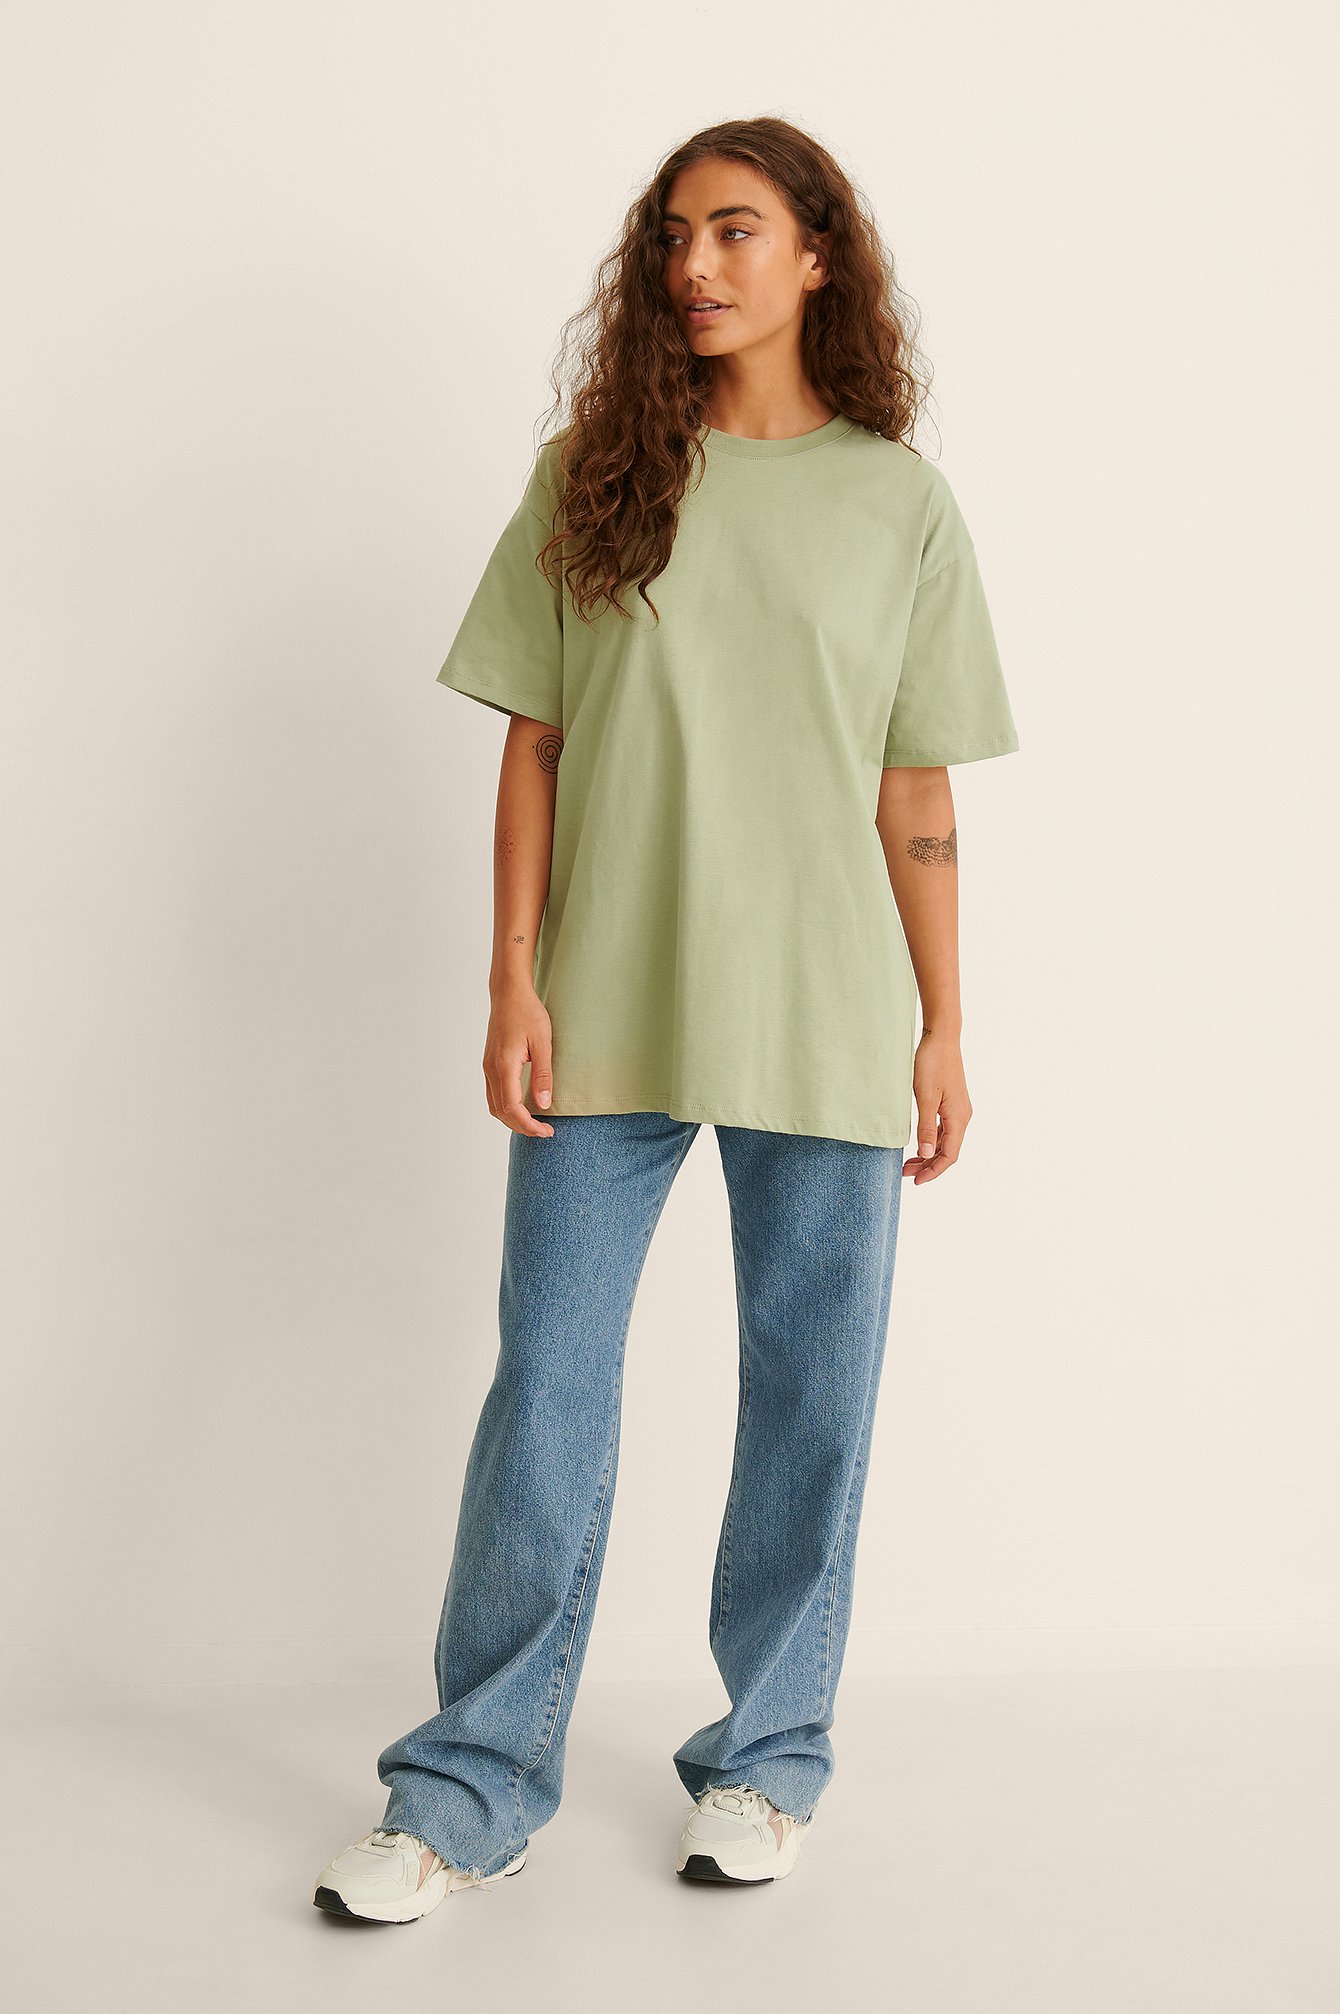 Khaki Luźny T-shirt z okrągłym dekoltem, z tkaniny organicznej